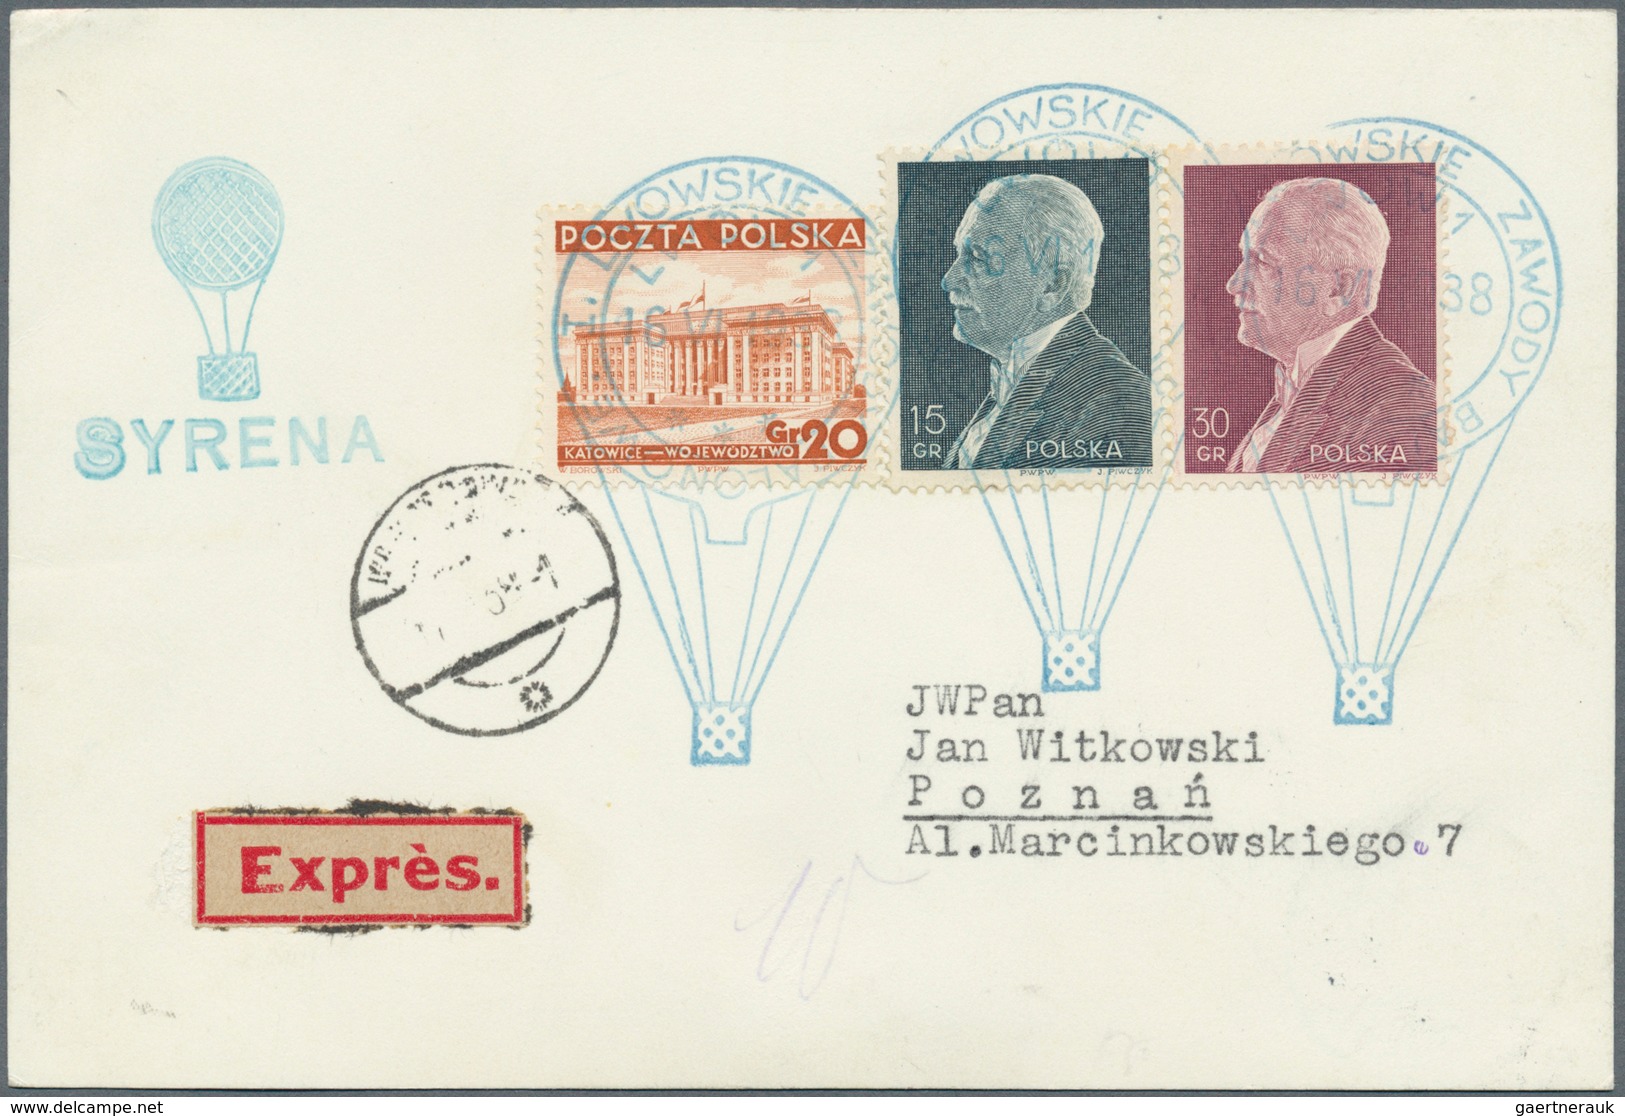 12826 Ballonpost: 1938, 16.VI., Poland, complete set of six balloon cards/cover: balloons "Sanok", "Mo?cic